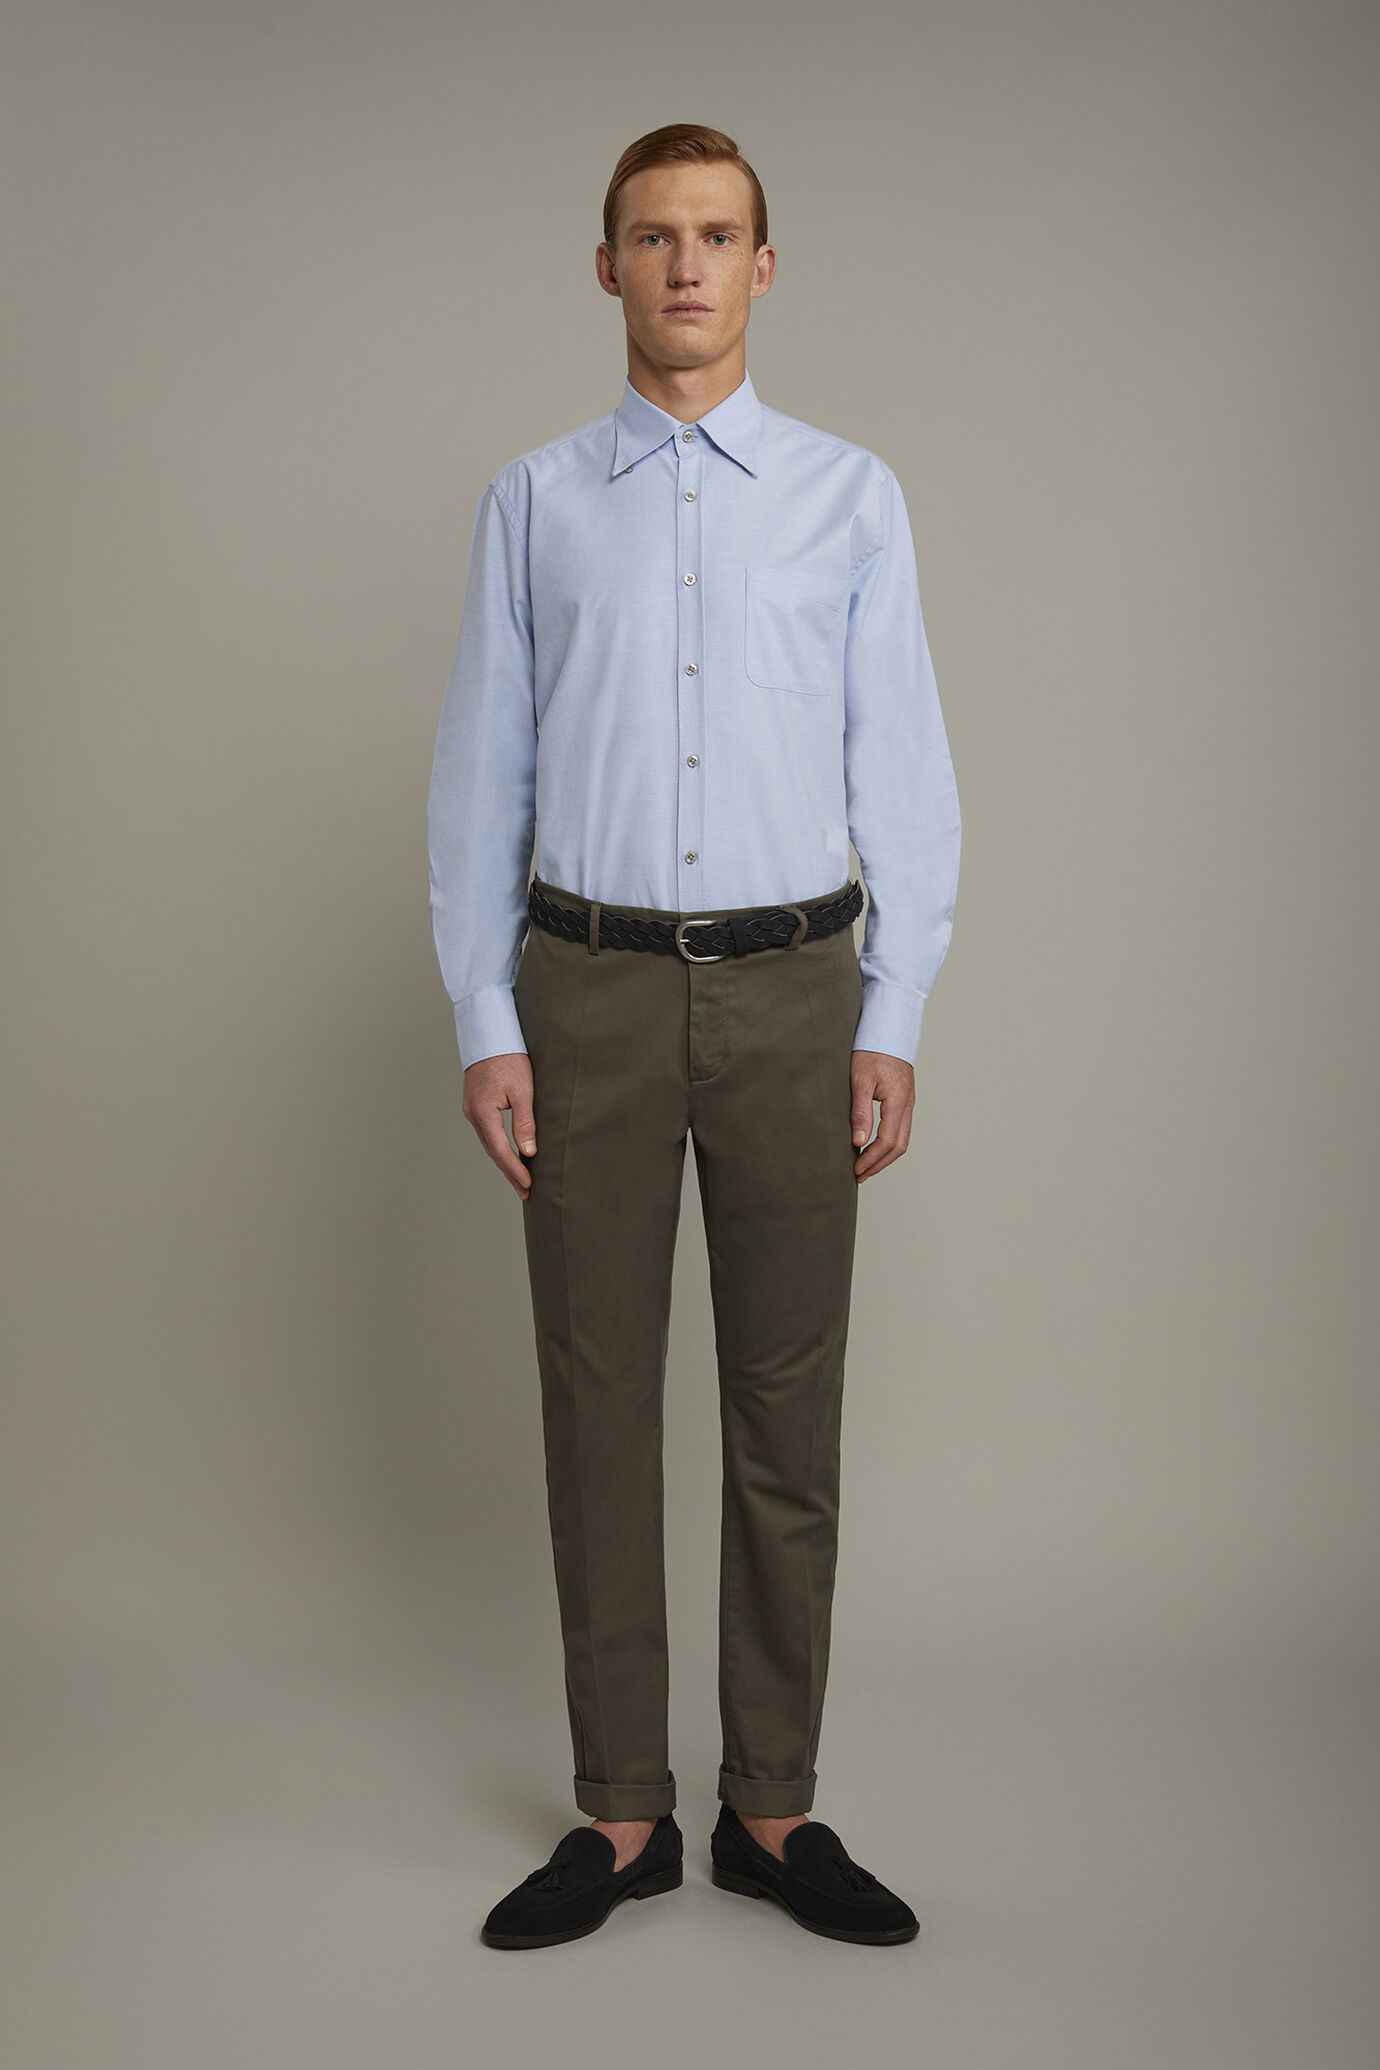 Pantalone chino uomo classico costruzione twill elasticizzato perfect fit image number 2